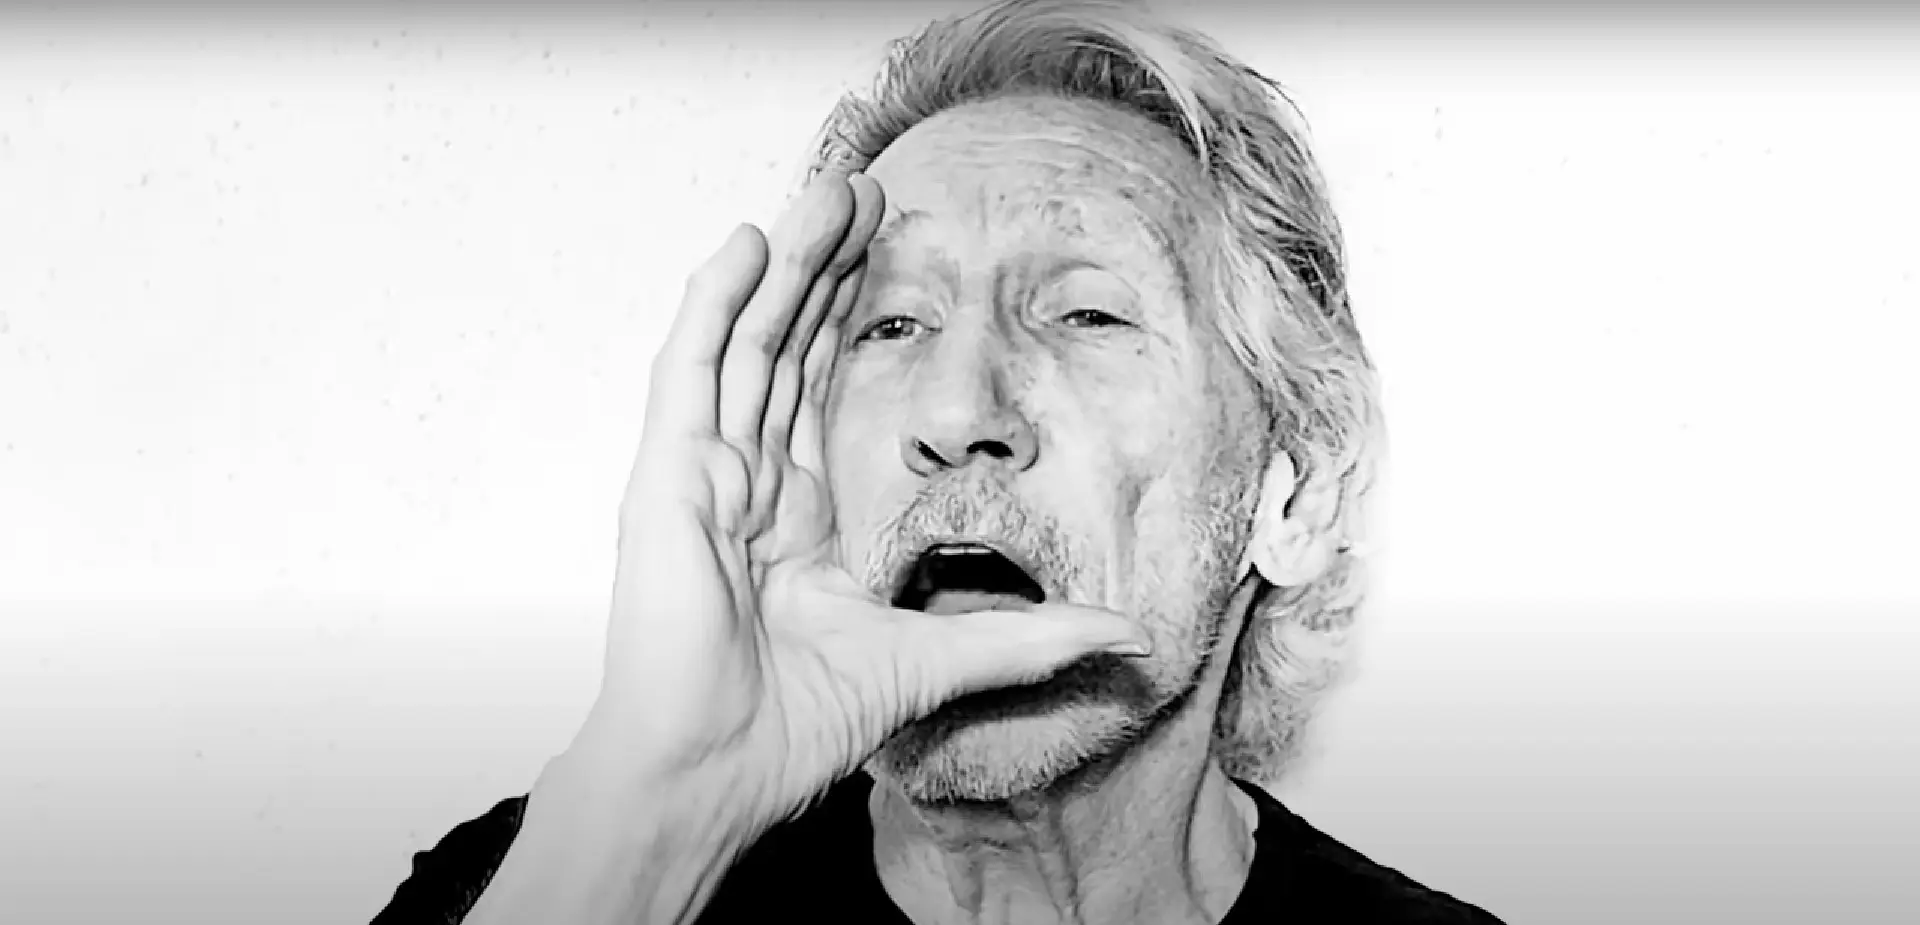 Roger Waters em manifestação antiguerra: atira a “culpa” para o Ocidente, lança farpas a Zelensky e imagina John Lennon de “punho erguido”